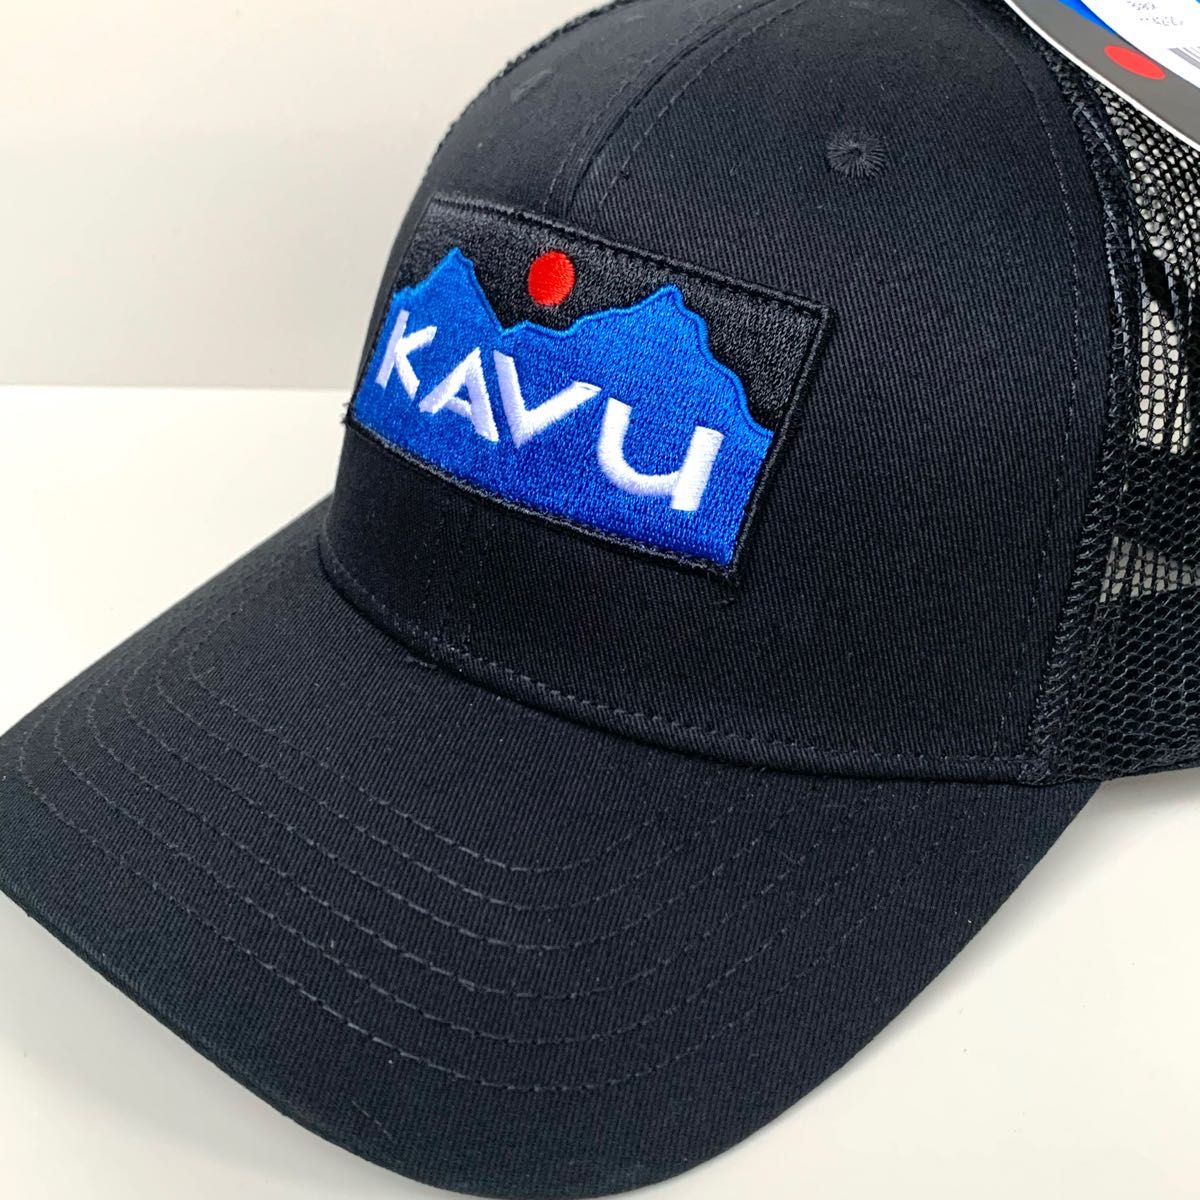 激安通販新作激安通販新作KAVU カブー メッシュキャップ ハット 帽子 登山 キャンプ アウトドアに♪ キャップ